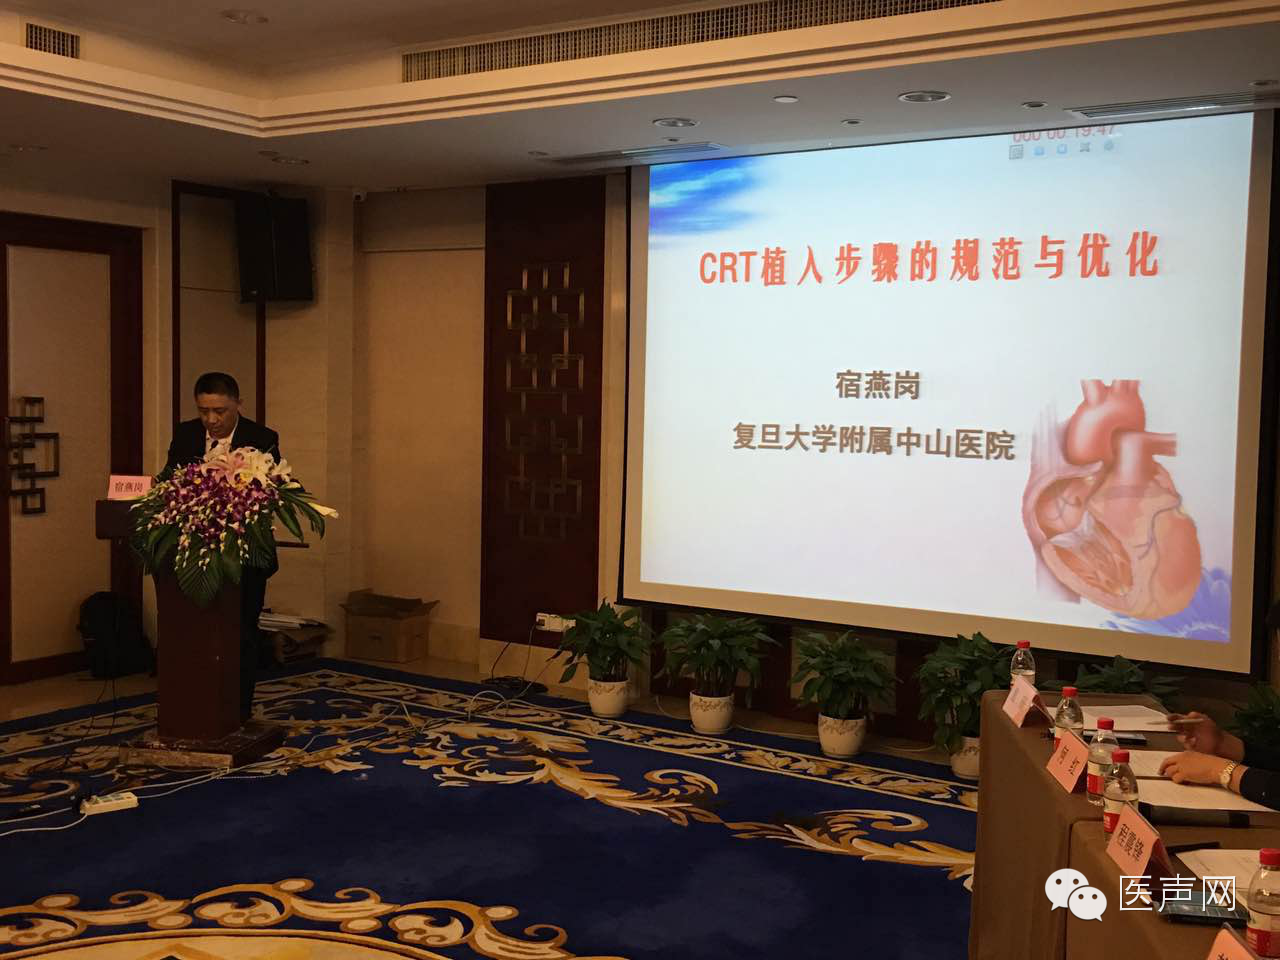 聚焦CRT丨CRT植入医生培训项目在浙江成功举办